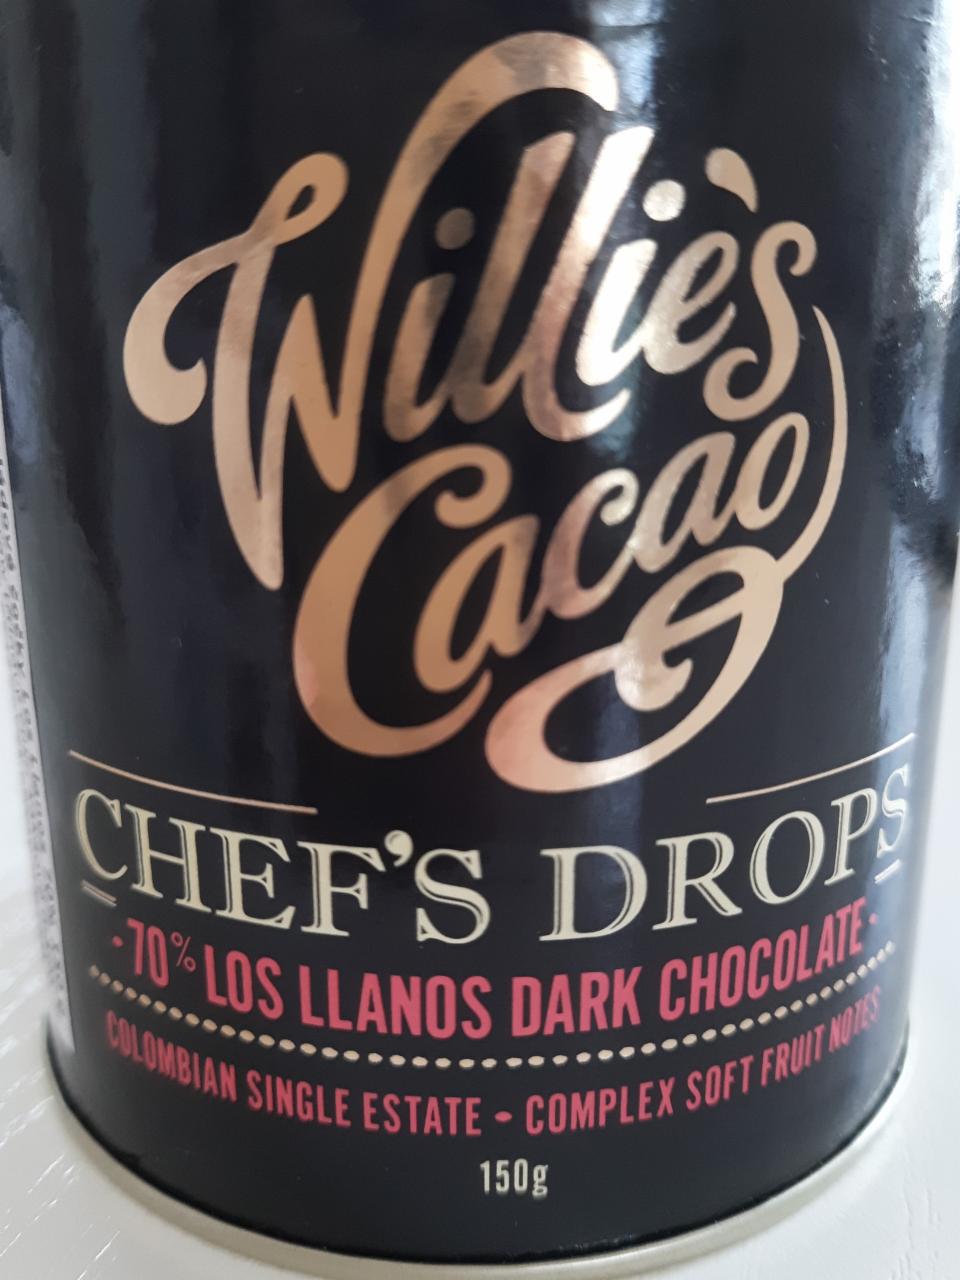 Fotografie - Los Llanos 70% Dark Chocolate Chefs Drops Willie's Cacao